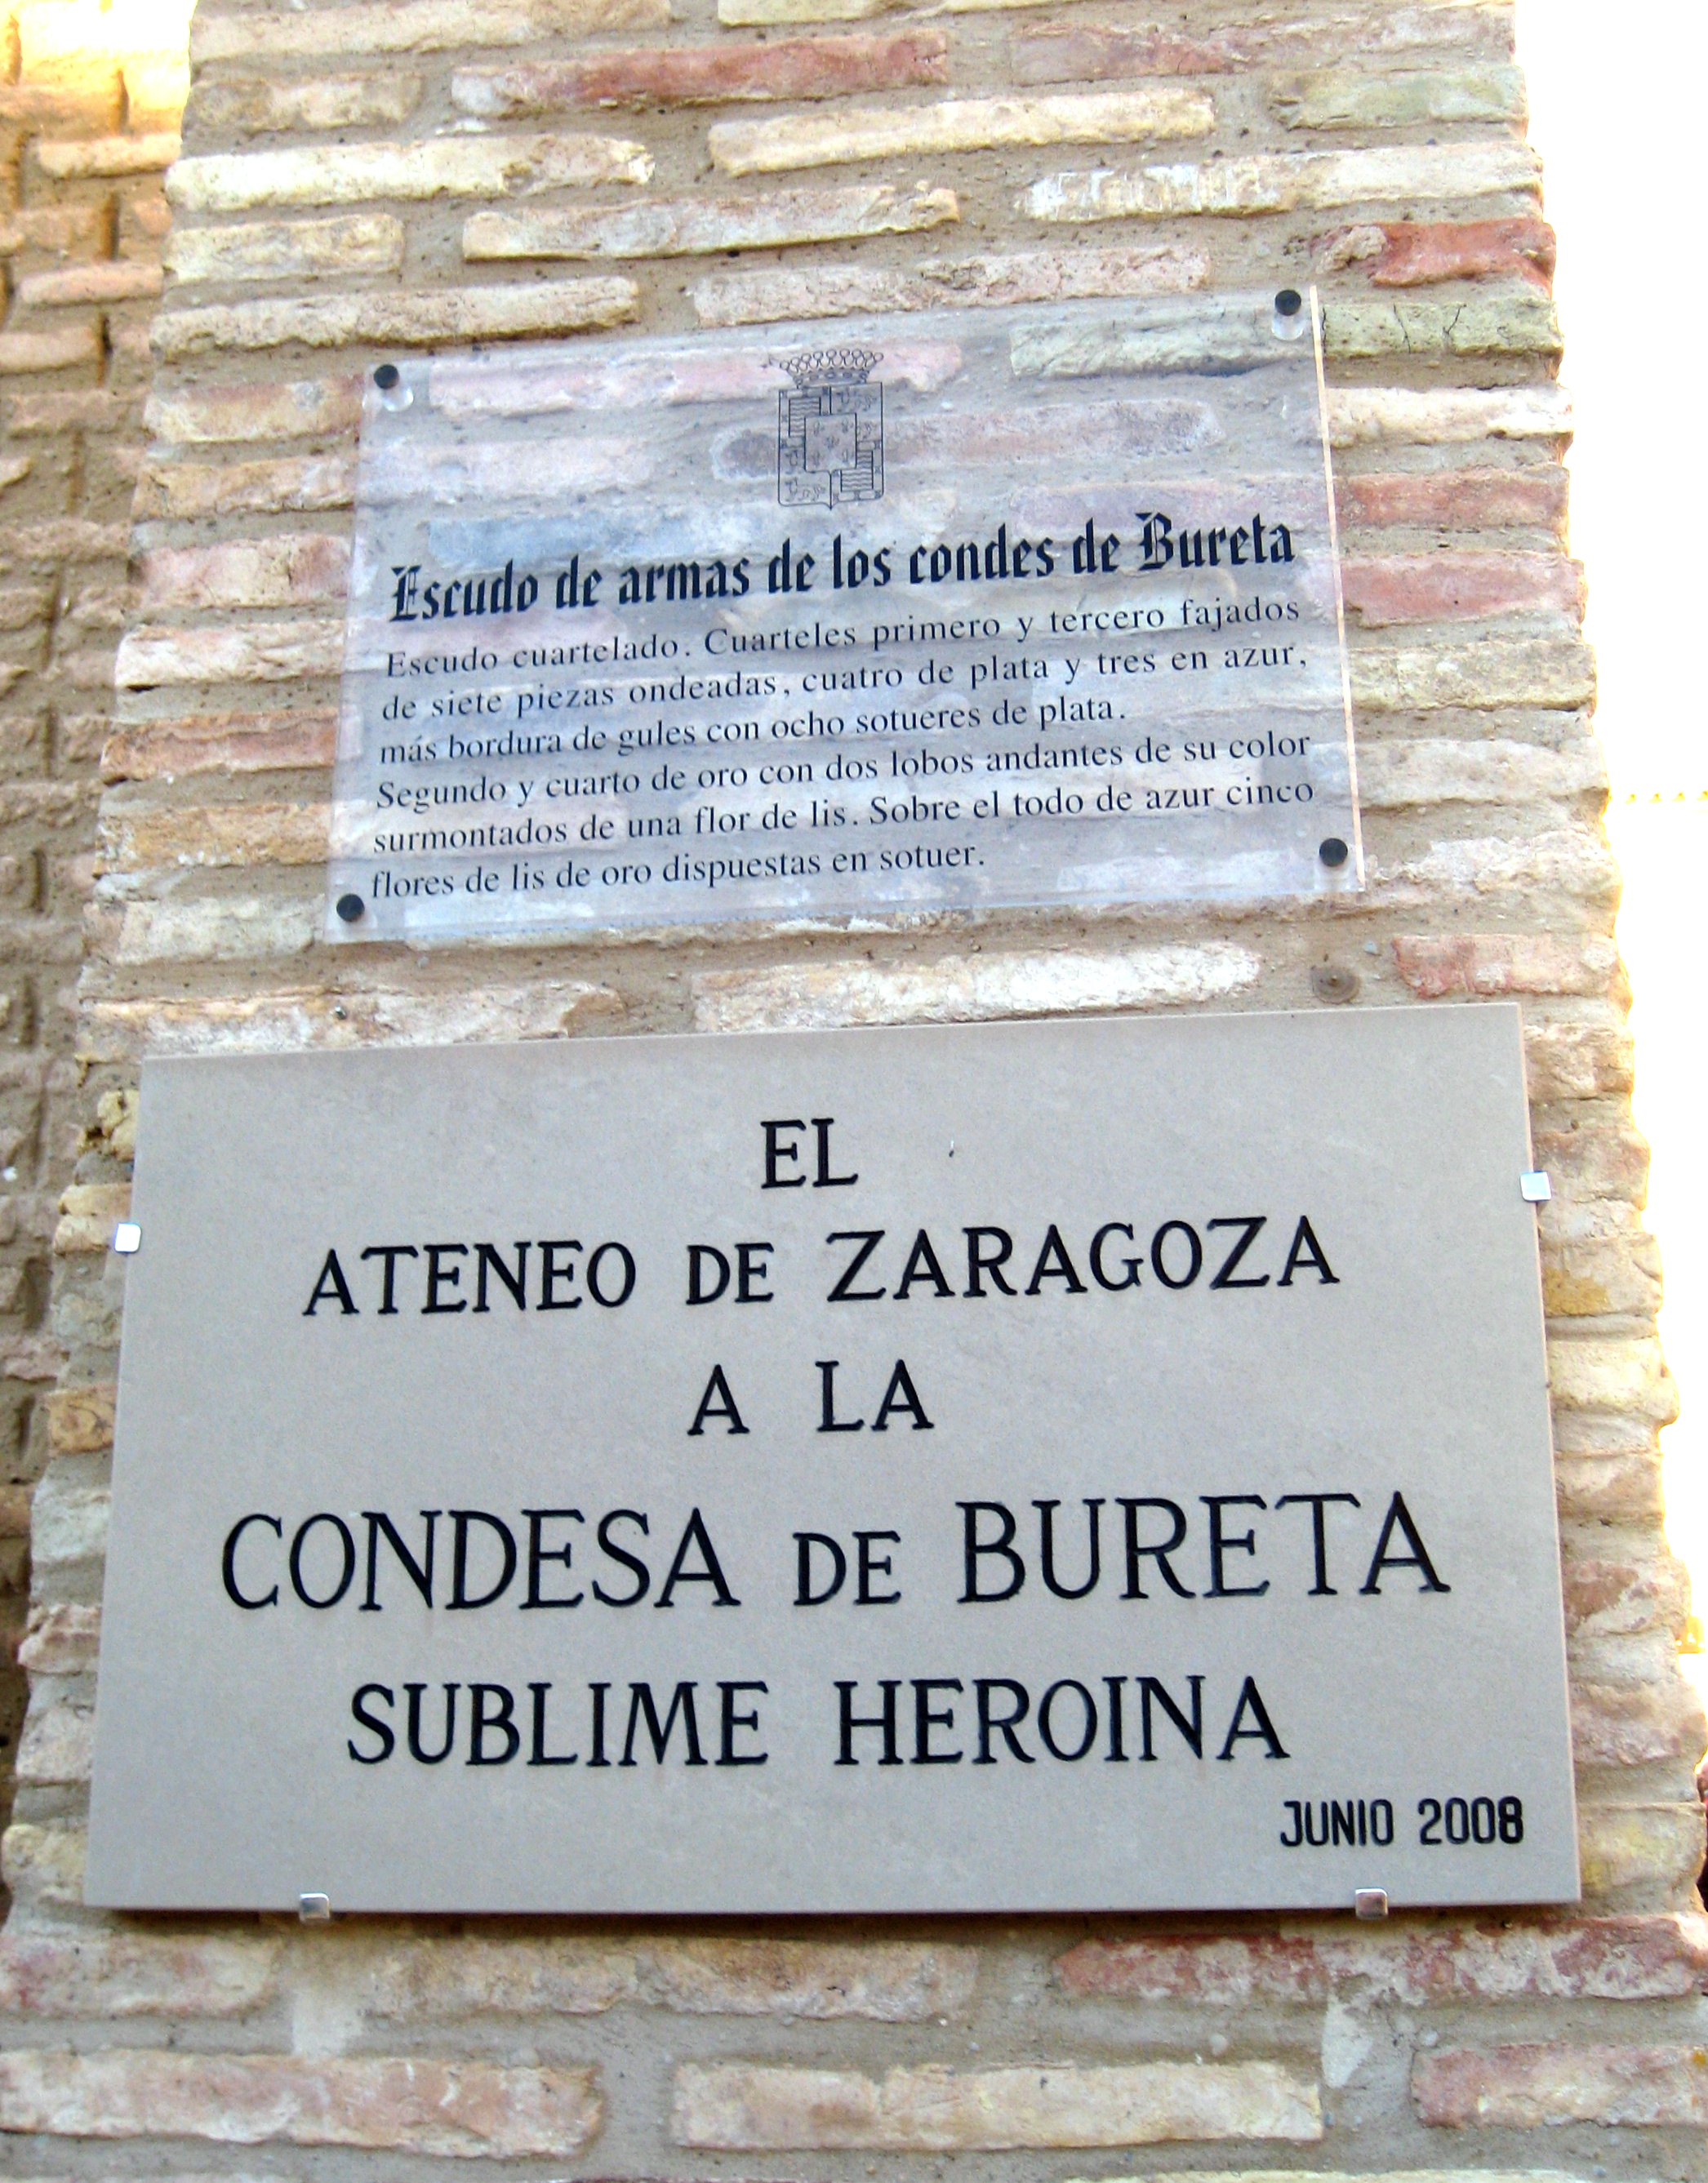 Tarazona y Bureta